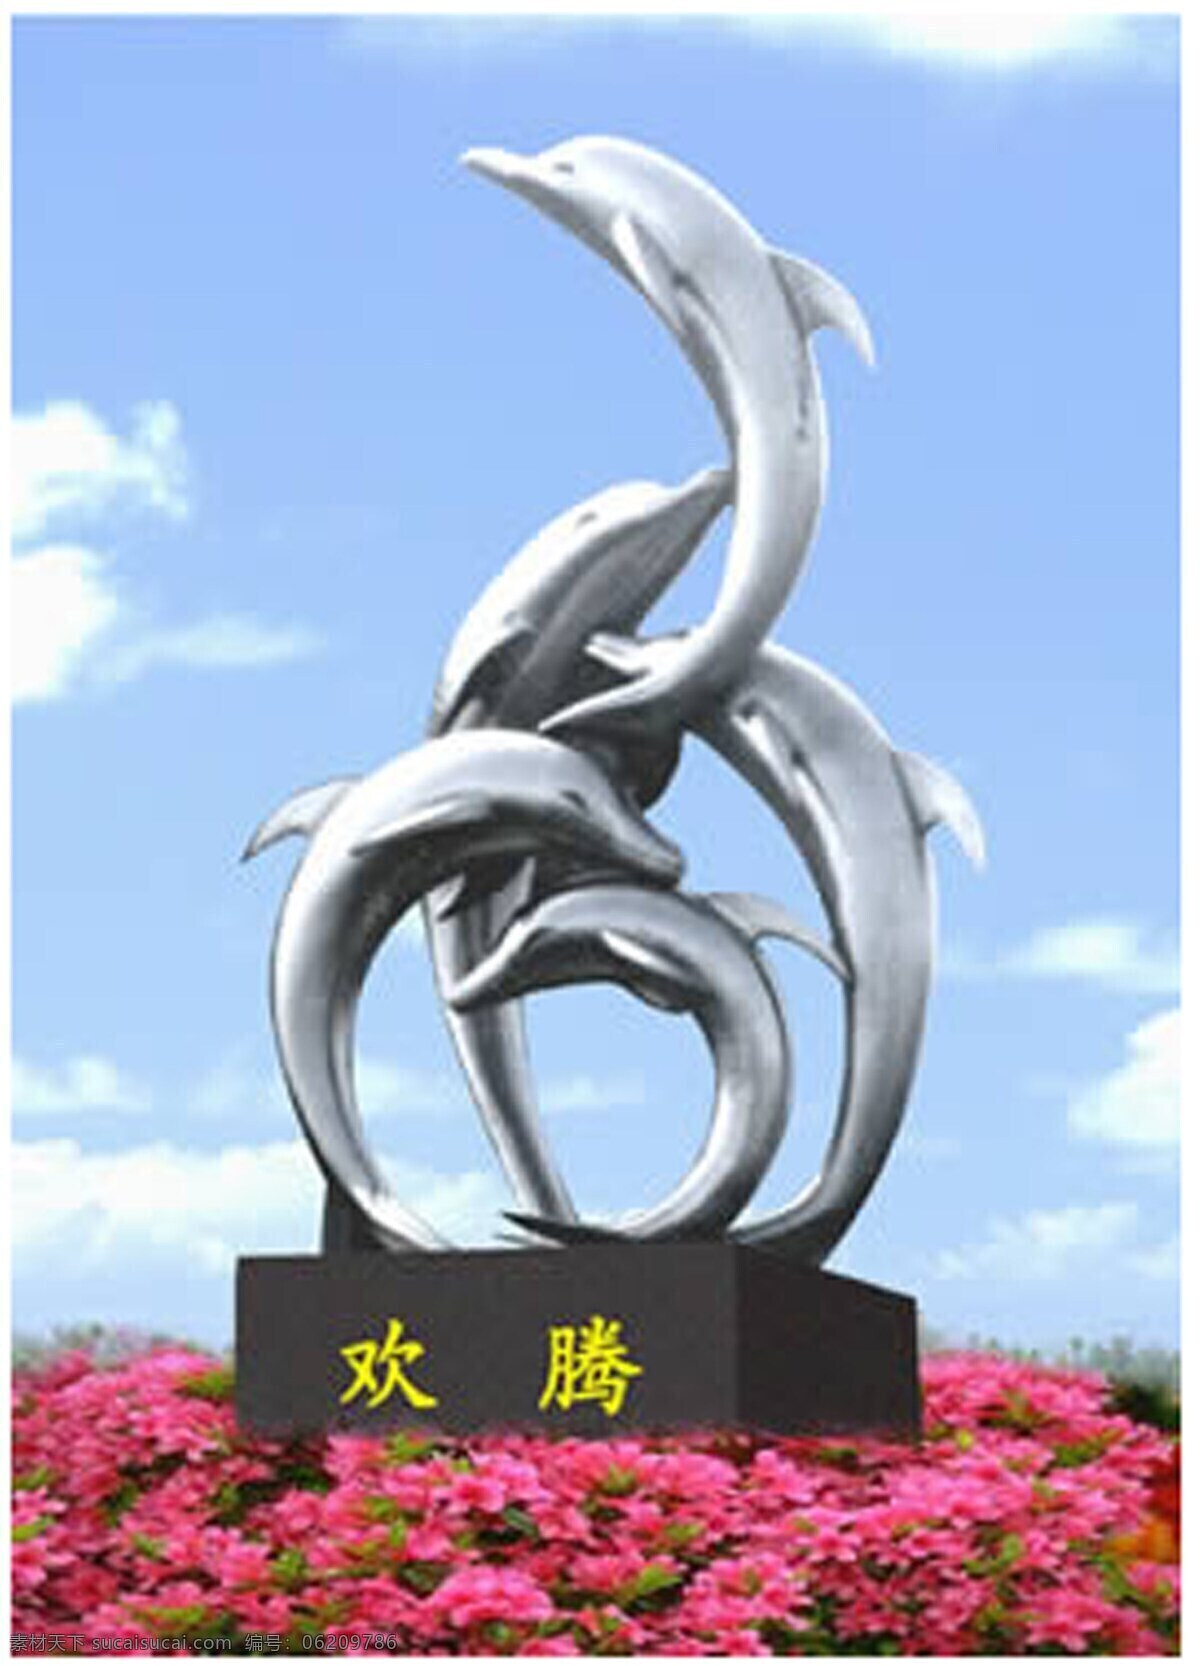 海豚雕塑 动物雕塑 铸铜雕塑 锻铜雕塑 玻璃钢雕塑 园林景观 城市雕塑 环境艺术 环境设计 景观设计